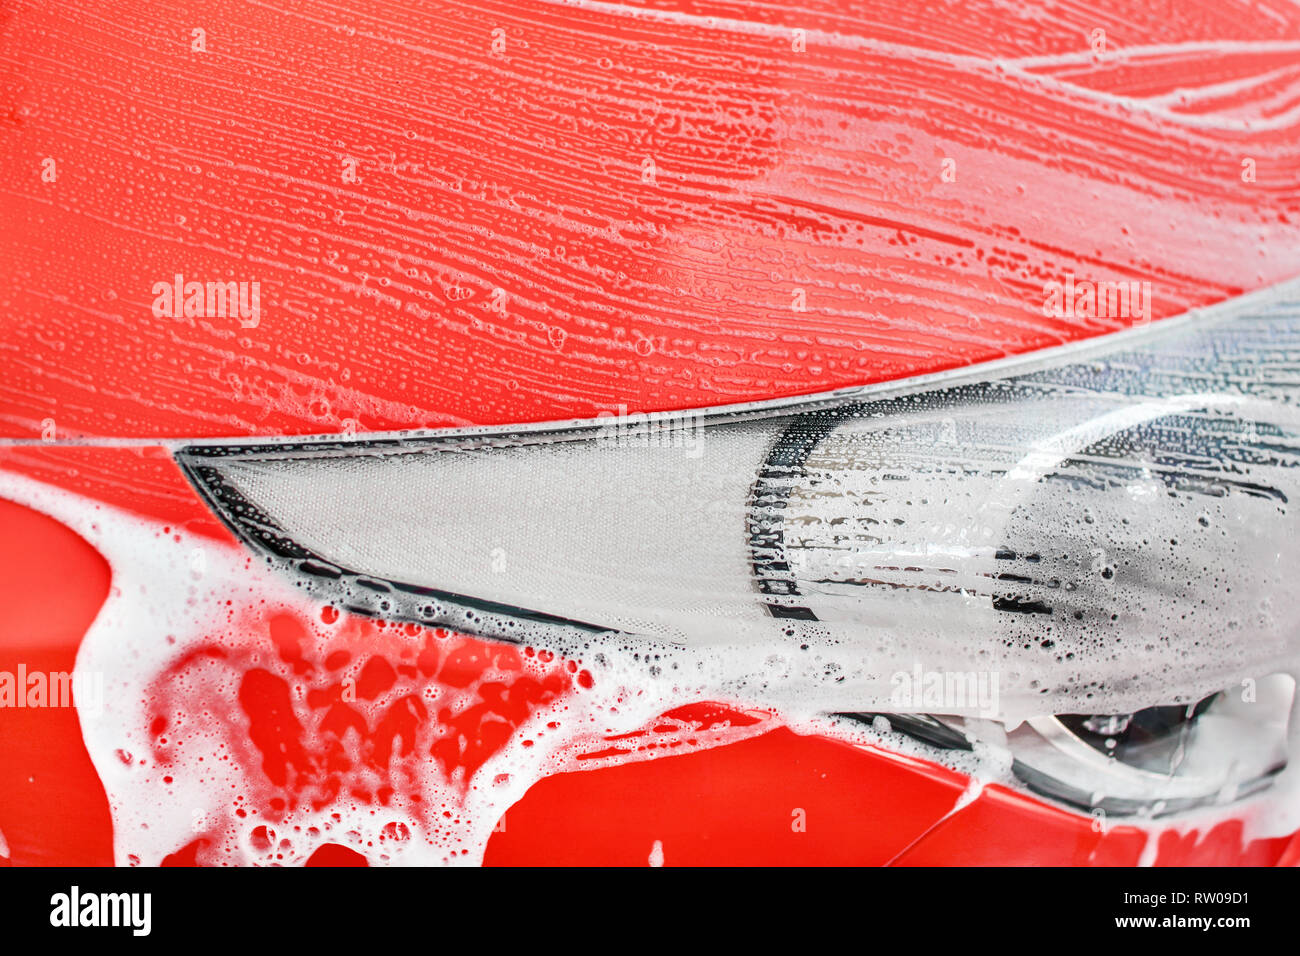 Details zu rotes Auto vorne Licht in der Waschstraße gewaschen. (Farbe kann leicht mit Farbton/Sättigung Tool geändert werden) Stockfoto